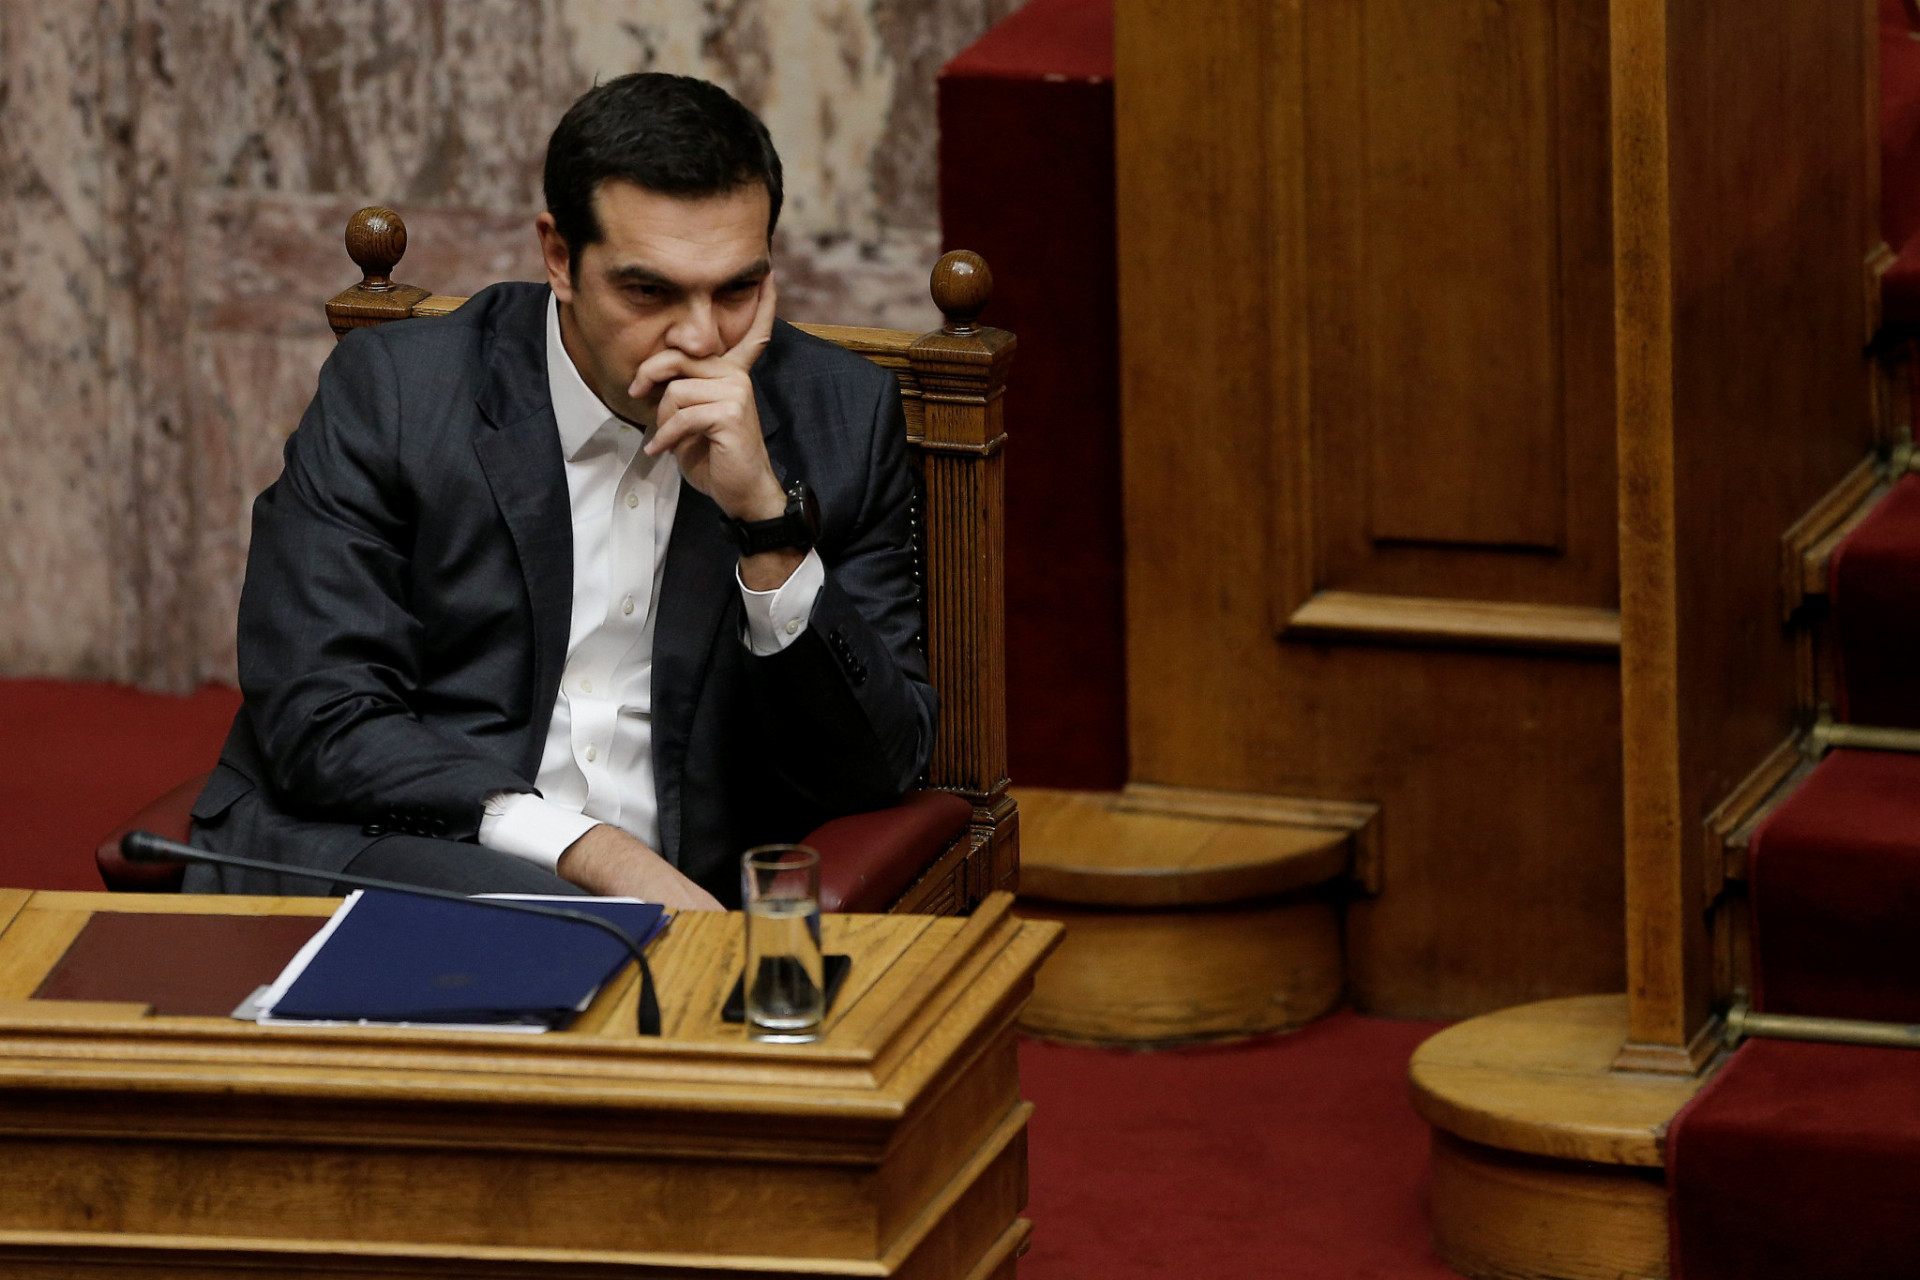 Grécky premiér Alexis Tsipras oslavovať rast ekonomiky zatiaľ nemôže. Musí pokračovať v reformnom úsilí.